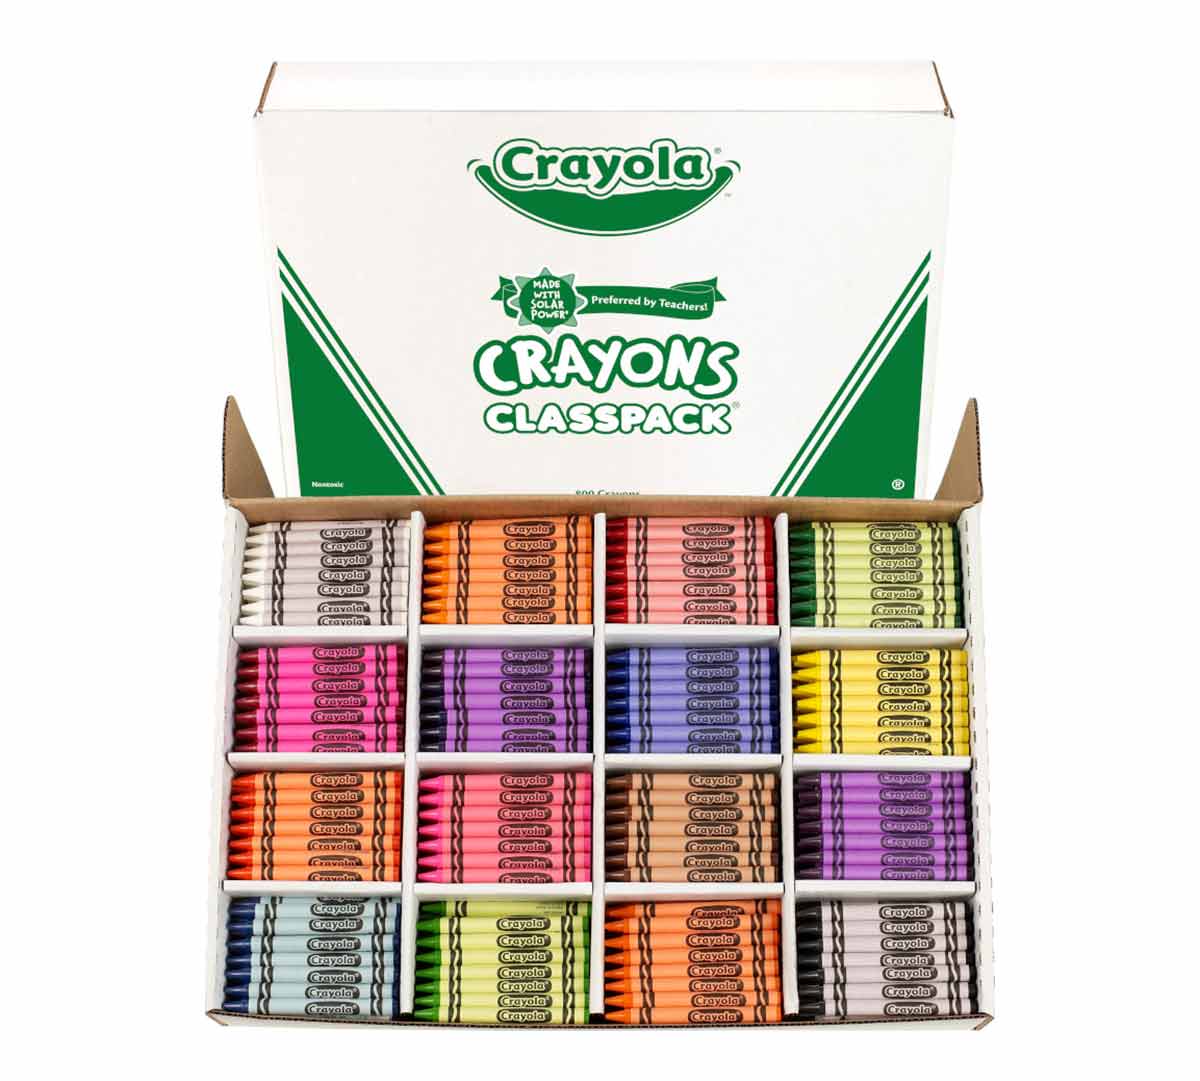 Crayon Classpack, 800 Count, 16 Colors, Crayola.com